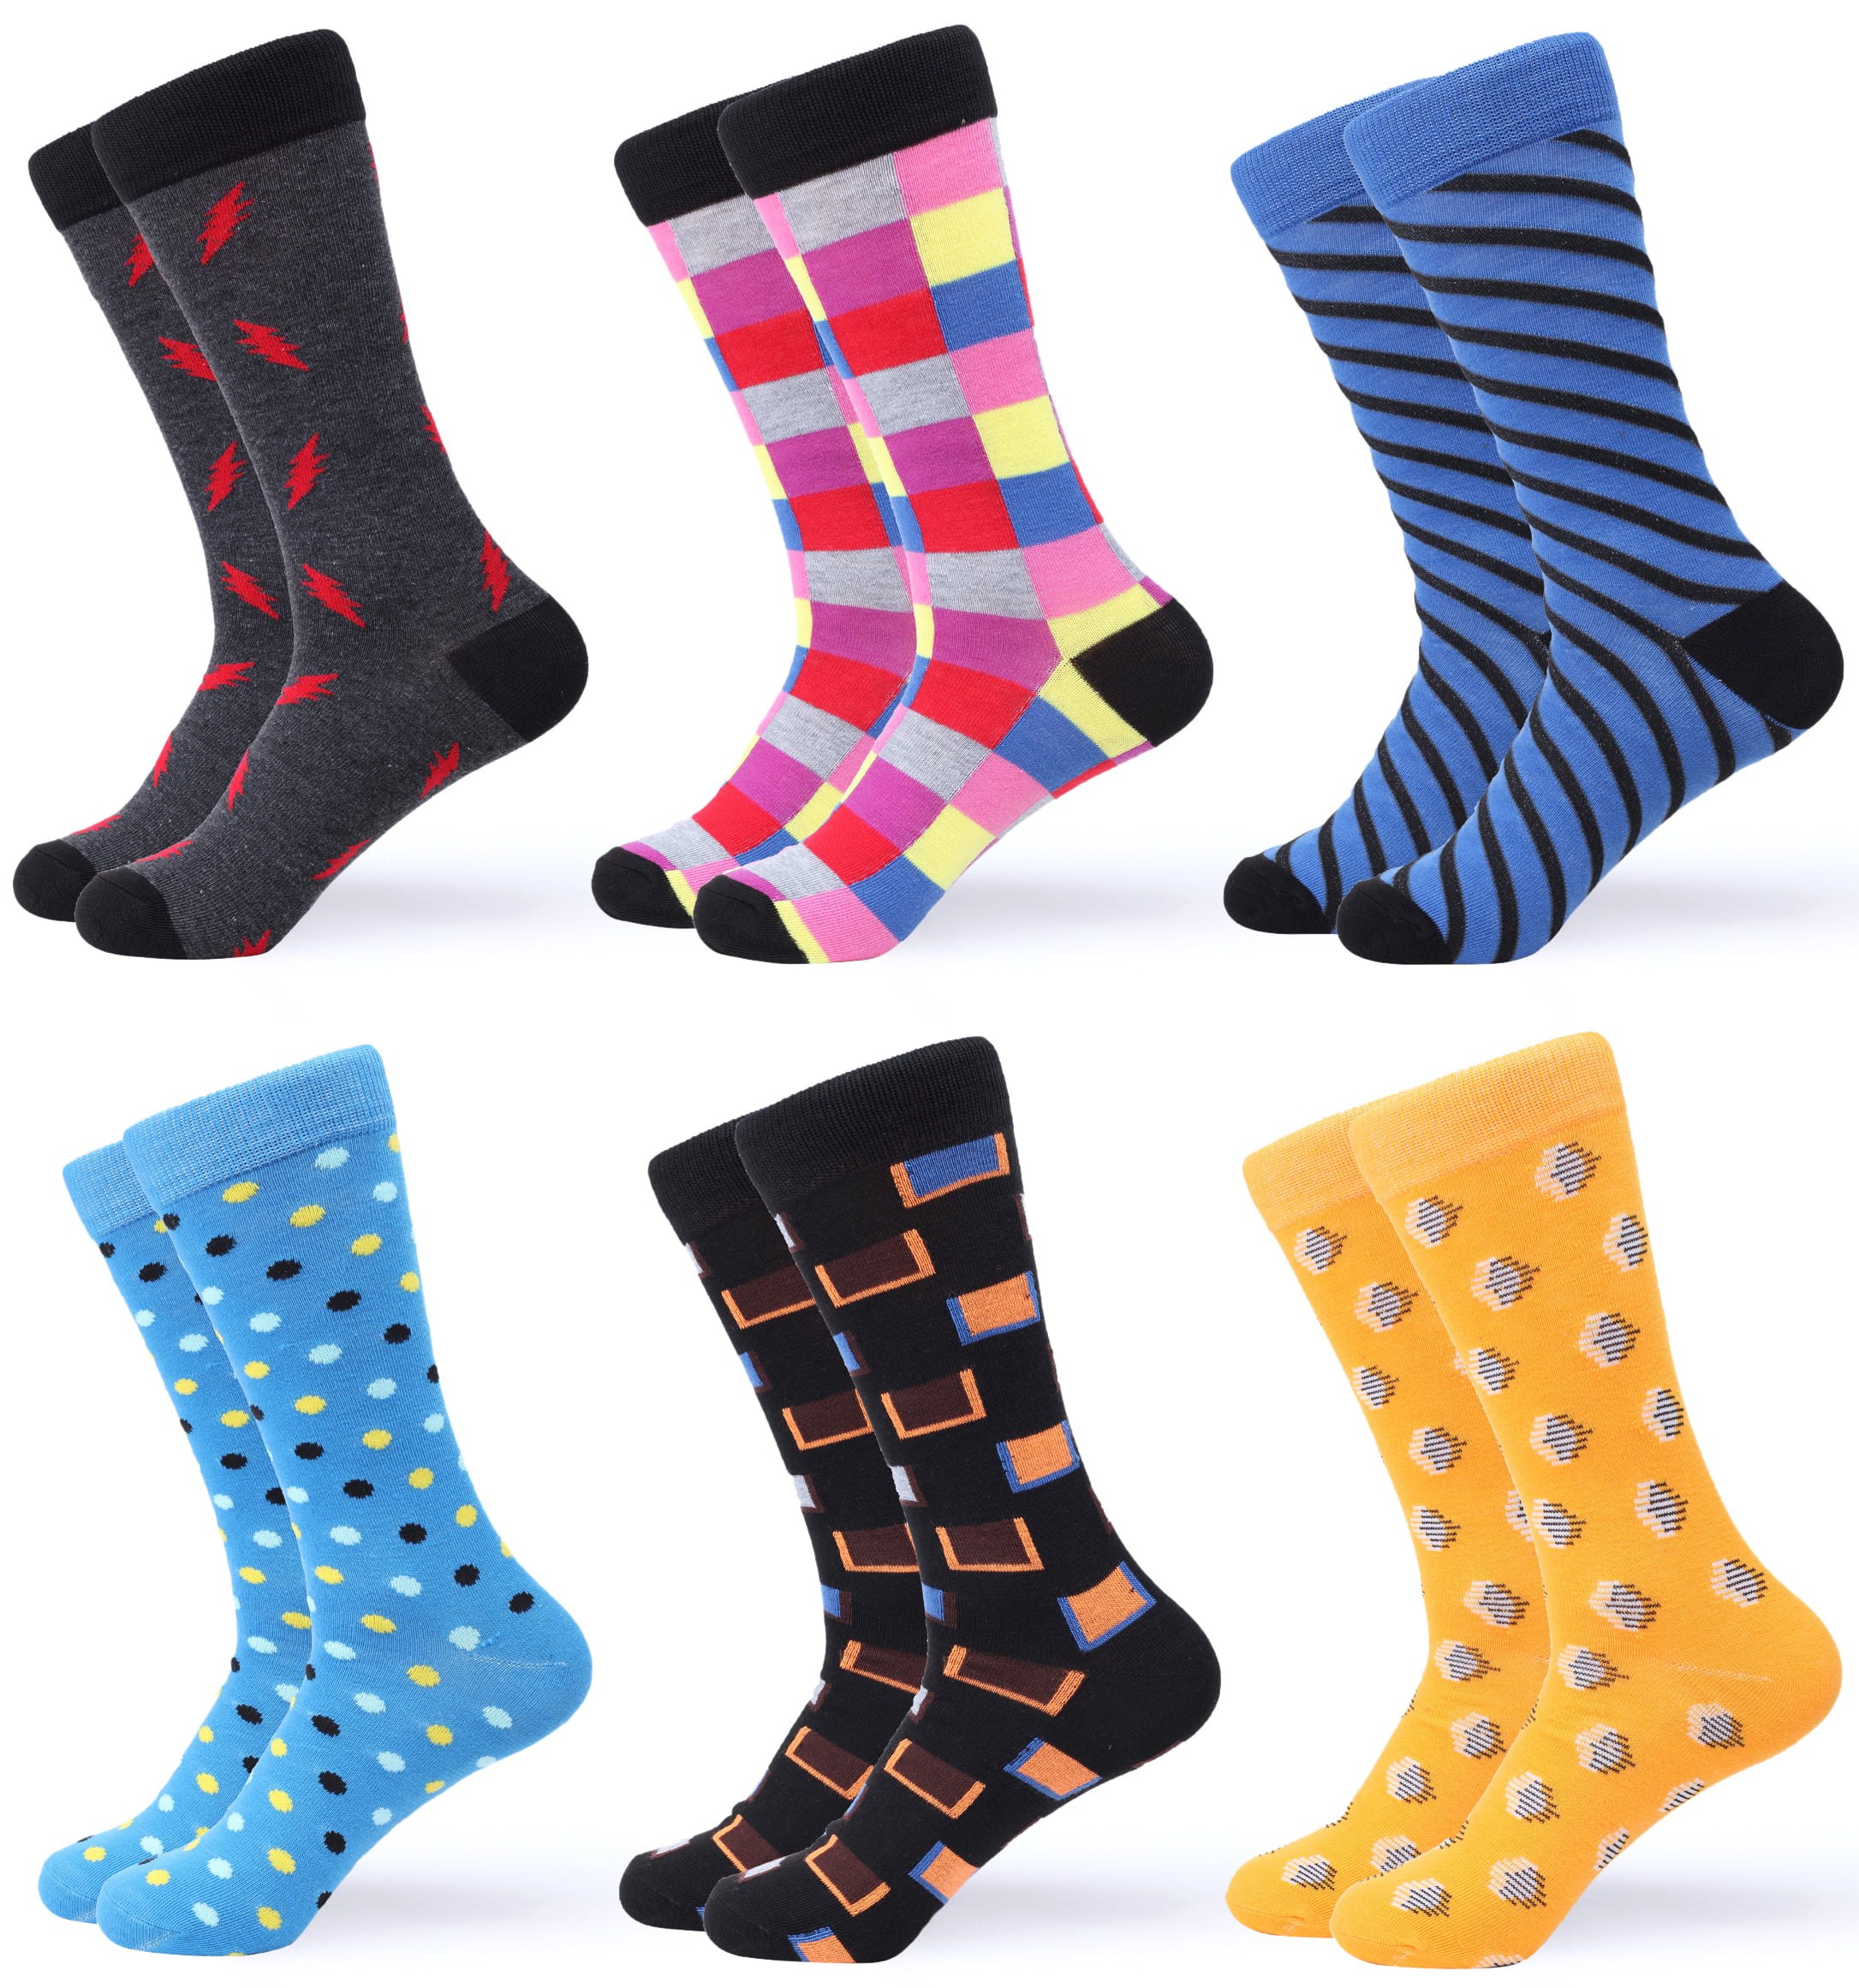 Gallery Seven Mens Dress Socks Funky Colorful Socks for Men - 6 Pack ...